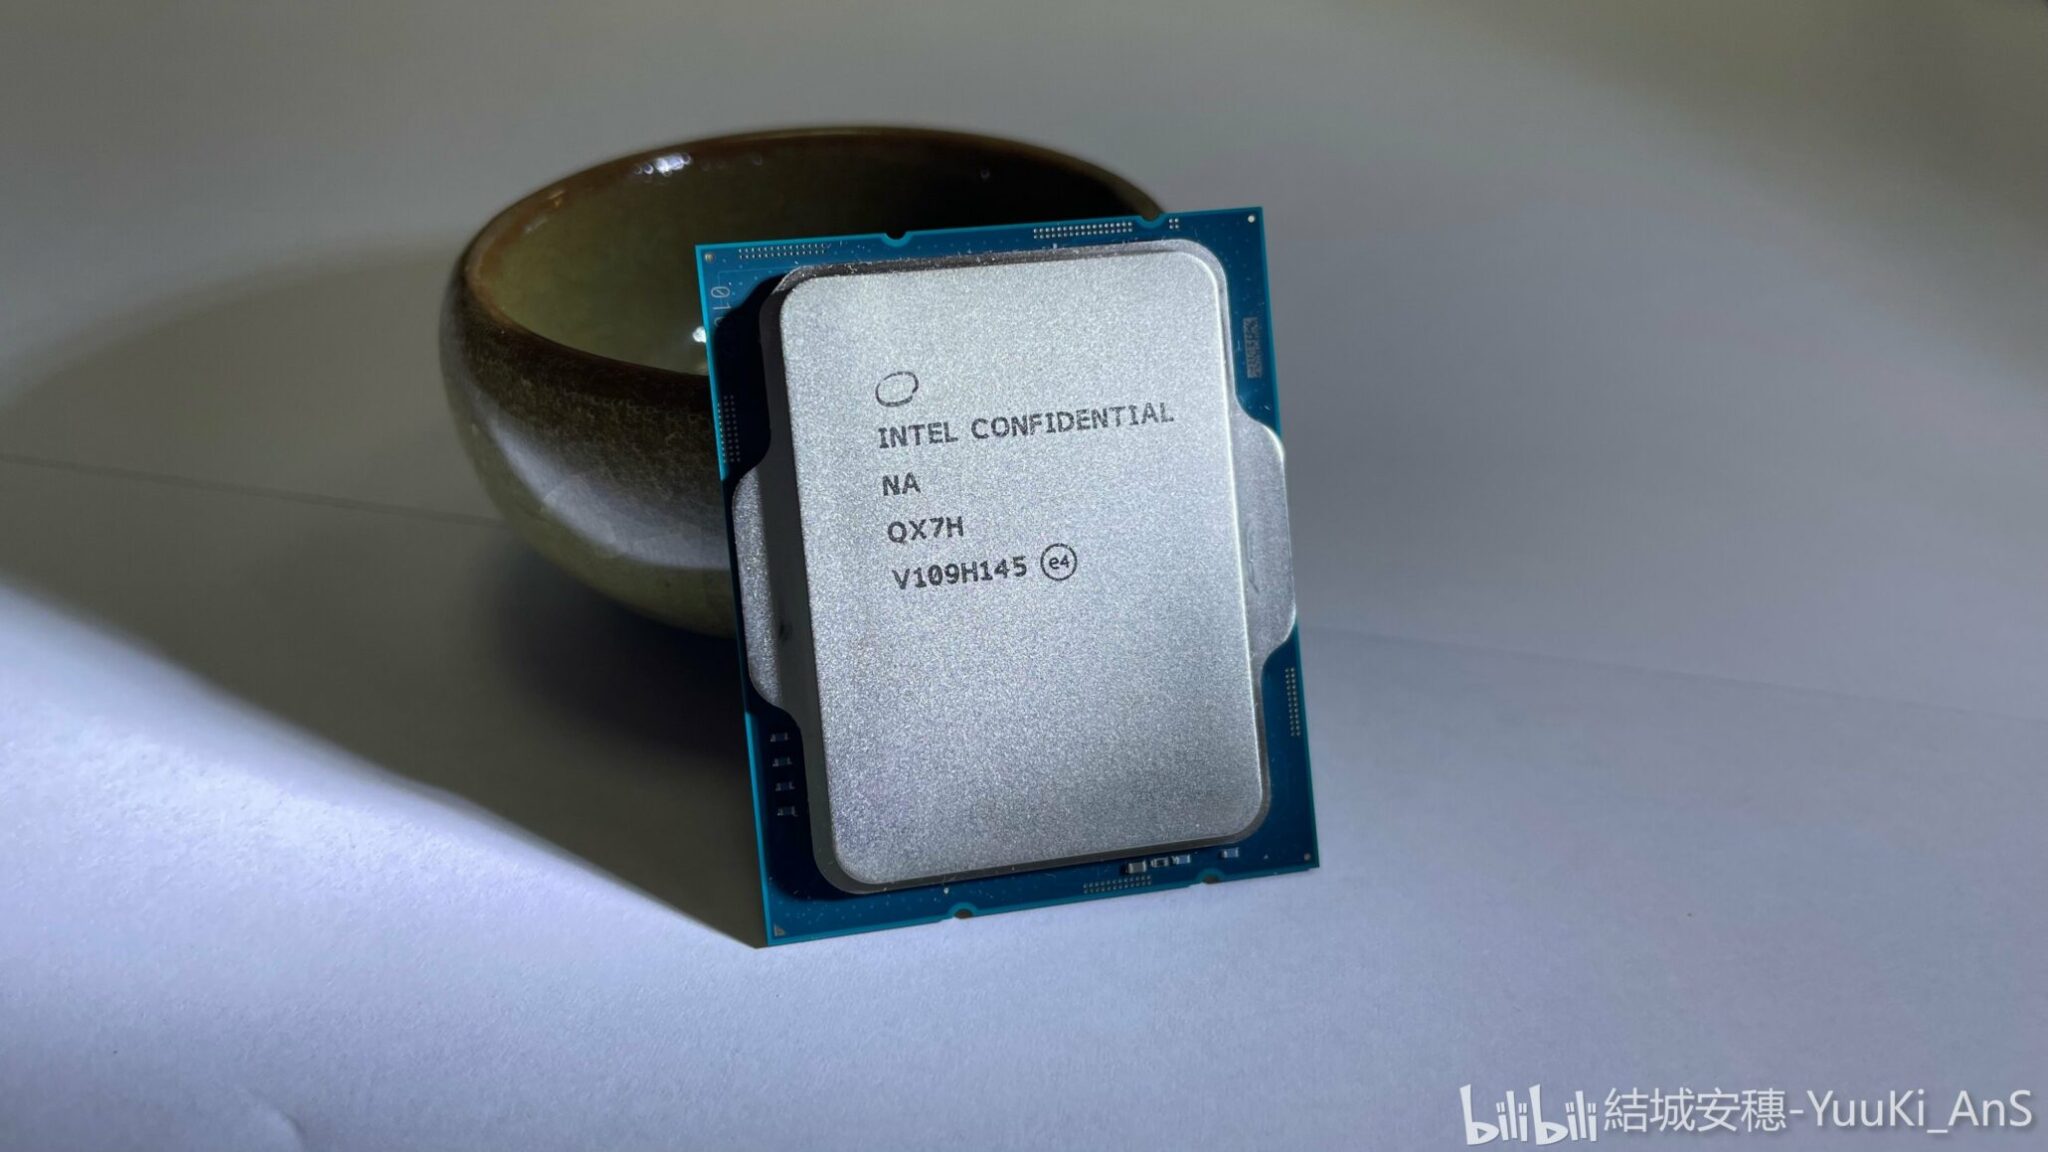 有名な高級ブランド Intel Corei9 プロセッサー 12900K 3.2GHz 最大